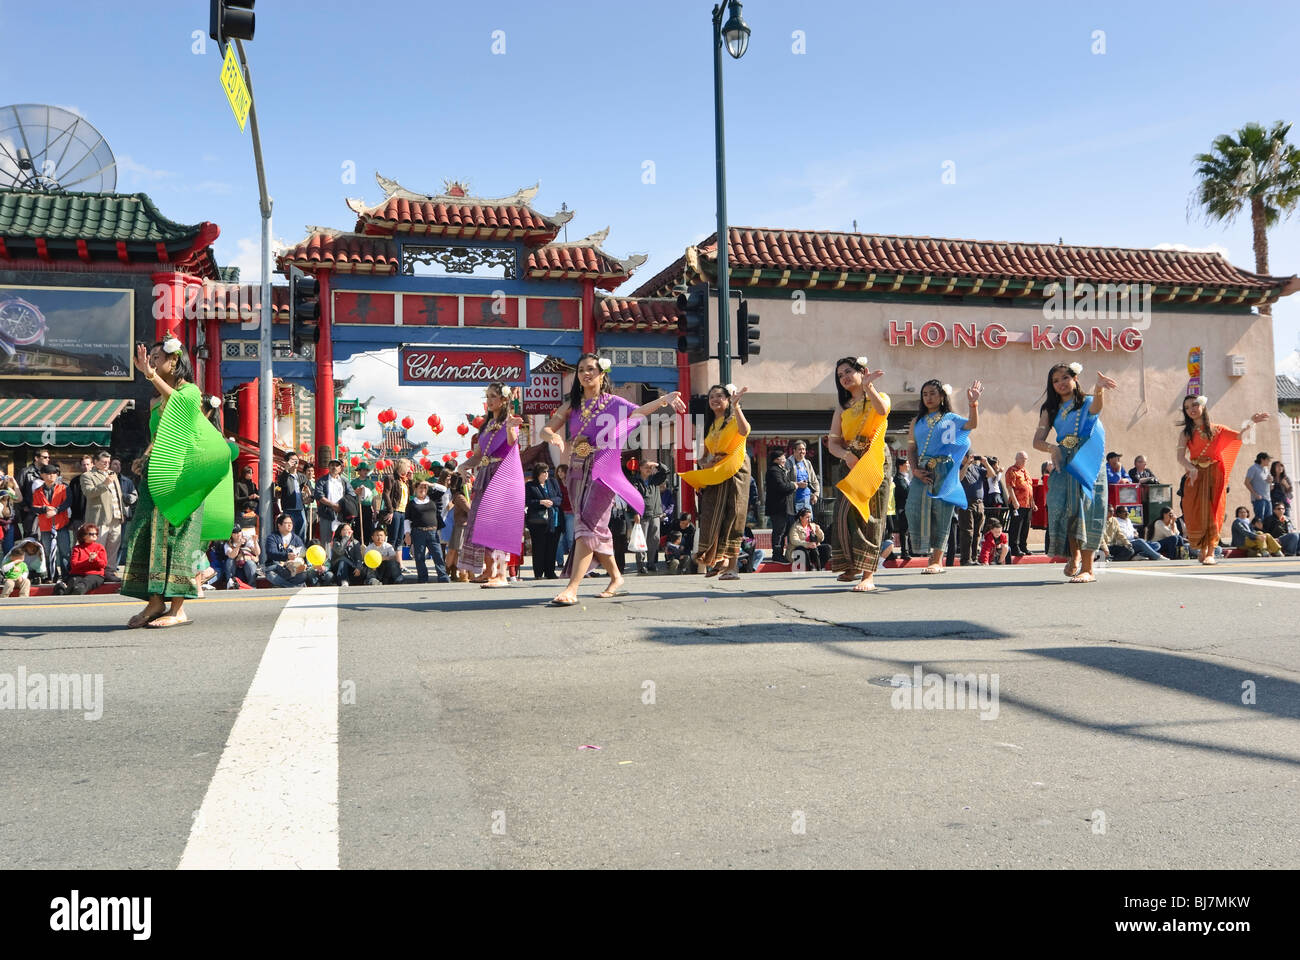 Chinesische Neujahrsparade in Chinatown in Los Angeles, Kalifornien. Ausgestattet mit marching Bands, Schwimmer und Tänzer. Stockfoto